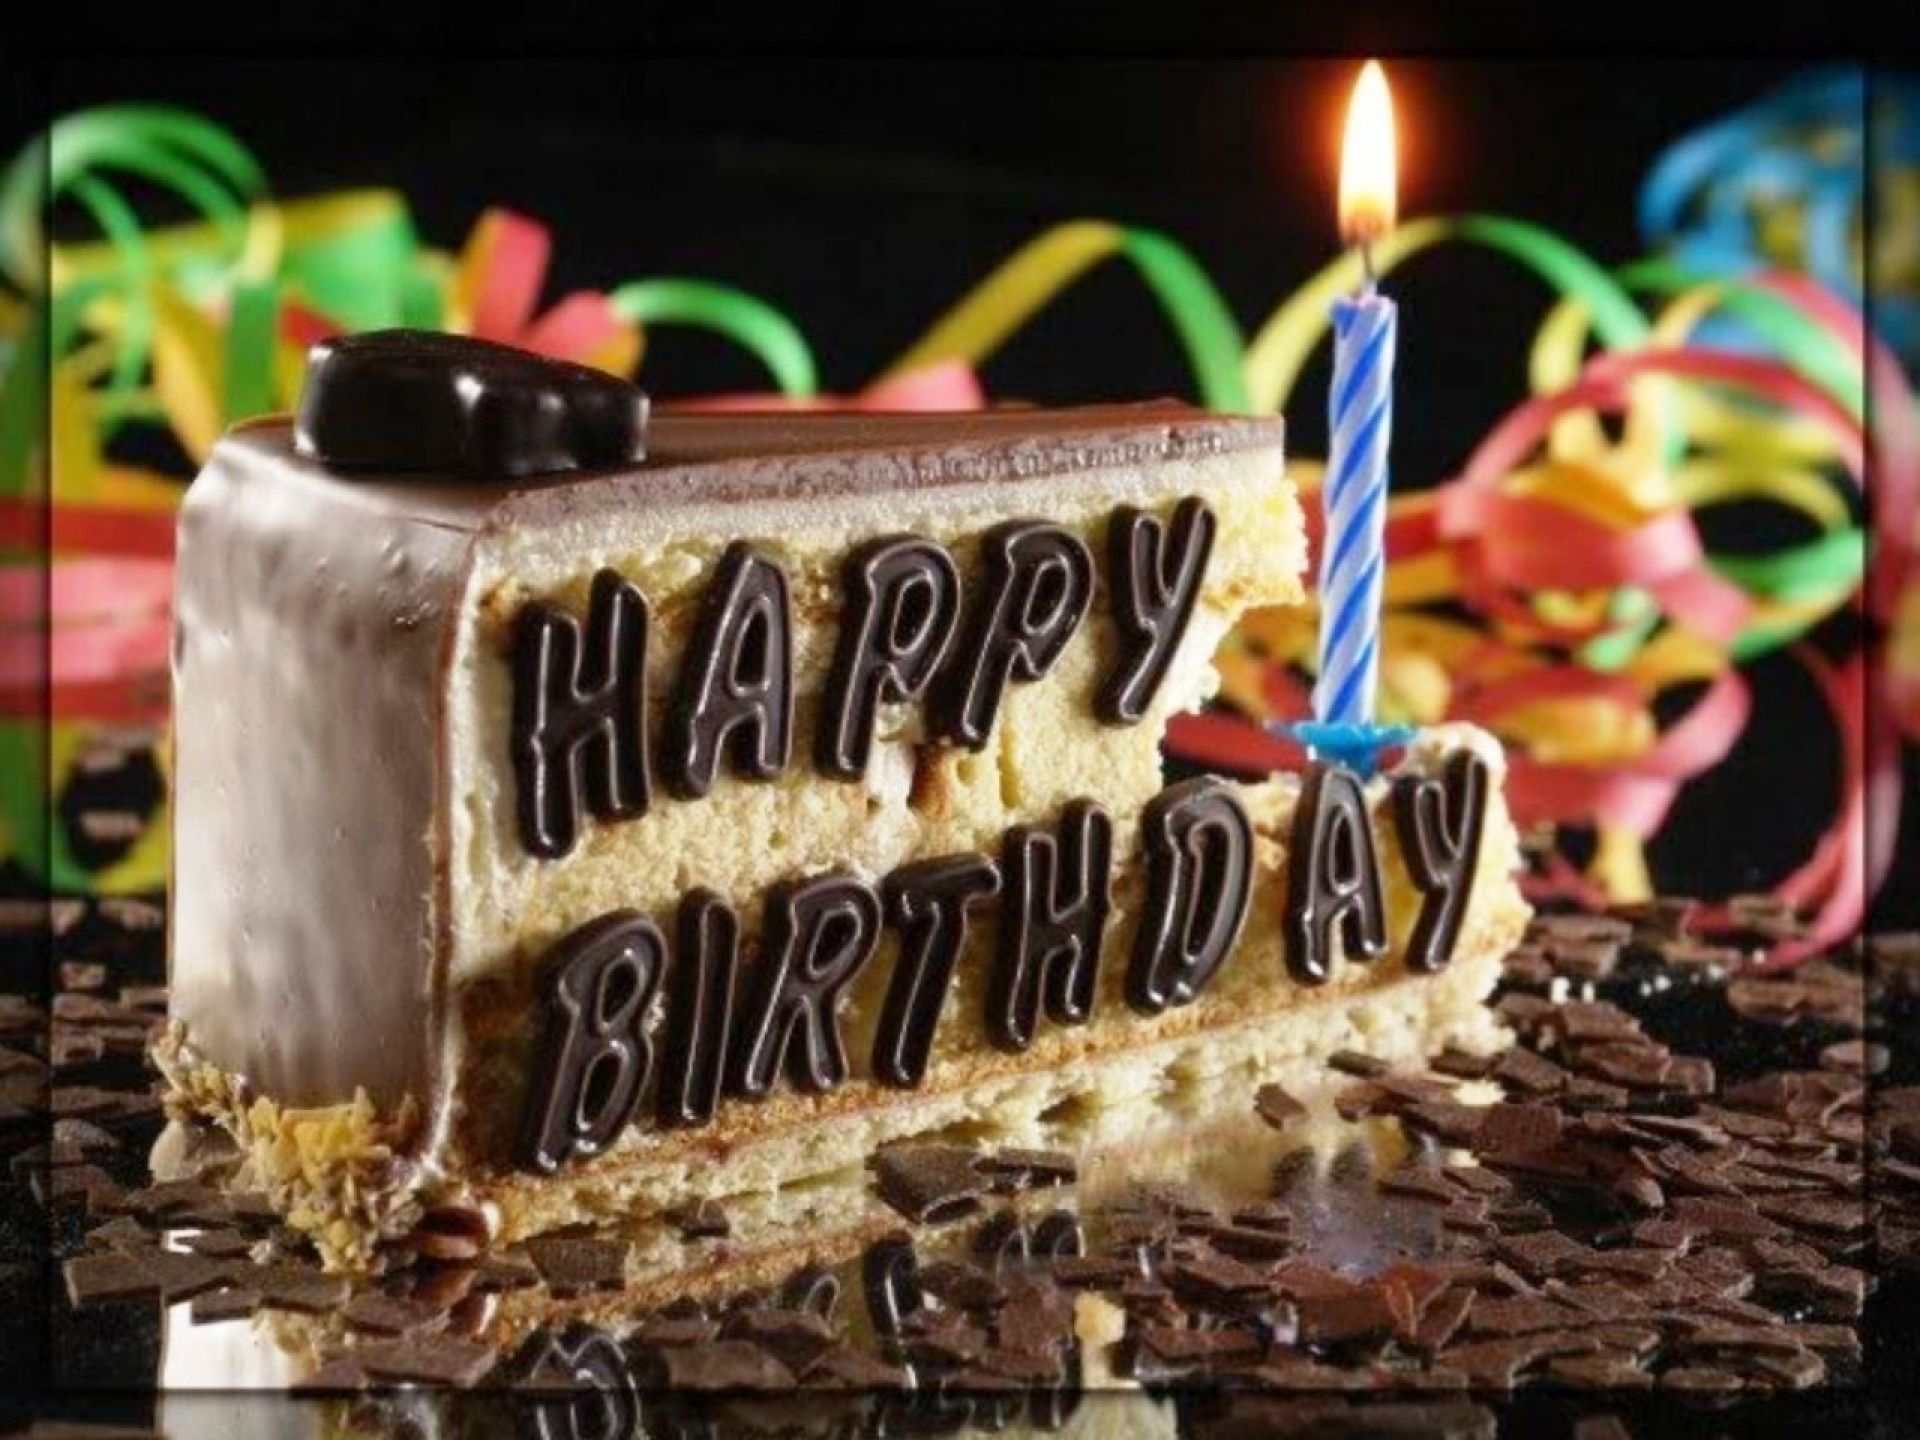 نمای باکیفیت از کیک تولد خاص برای پیام تبریک تولد به دوستان